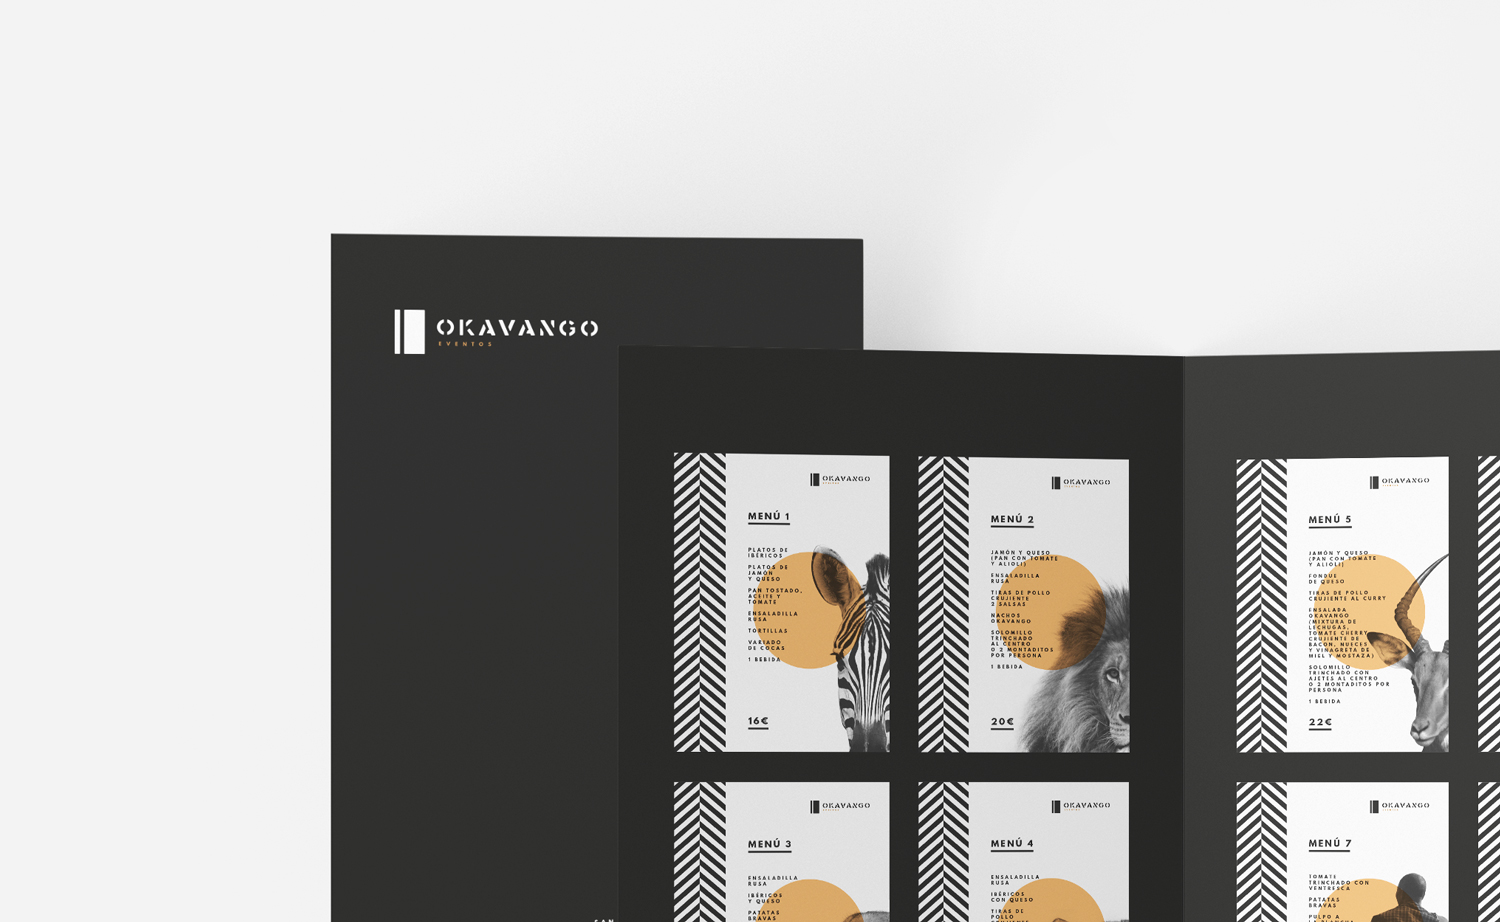 Diseño y desarrollo de identidad visual corporativa para Okavango Café. Menús.